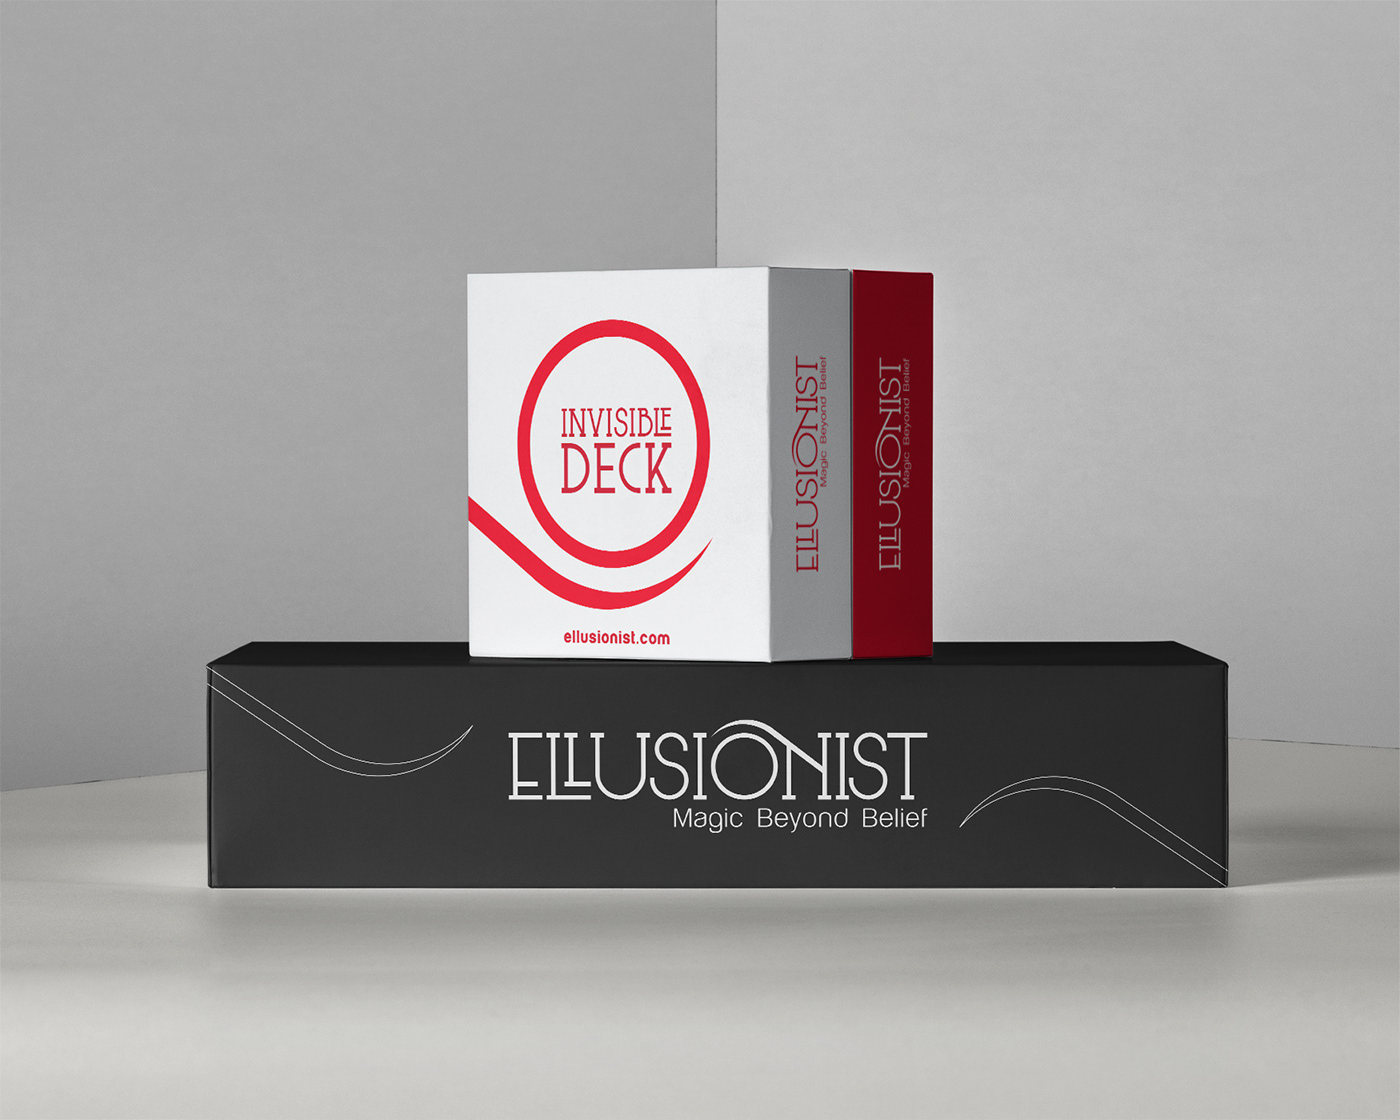 branding  Fotografia identidad visual GESTION DE MARCA ellusionisst Proyecto de Identidad marca marcas magia magic brand